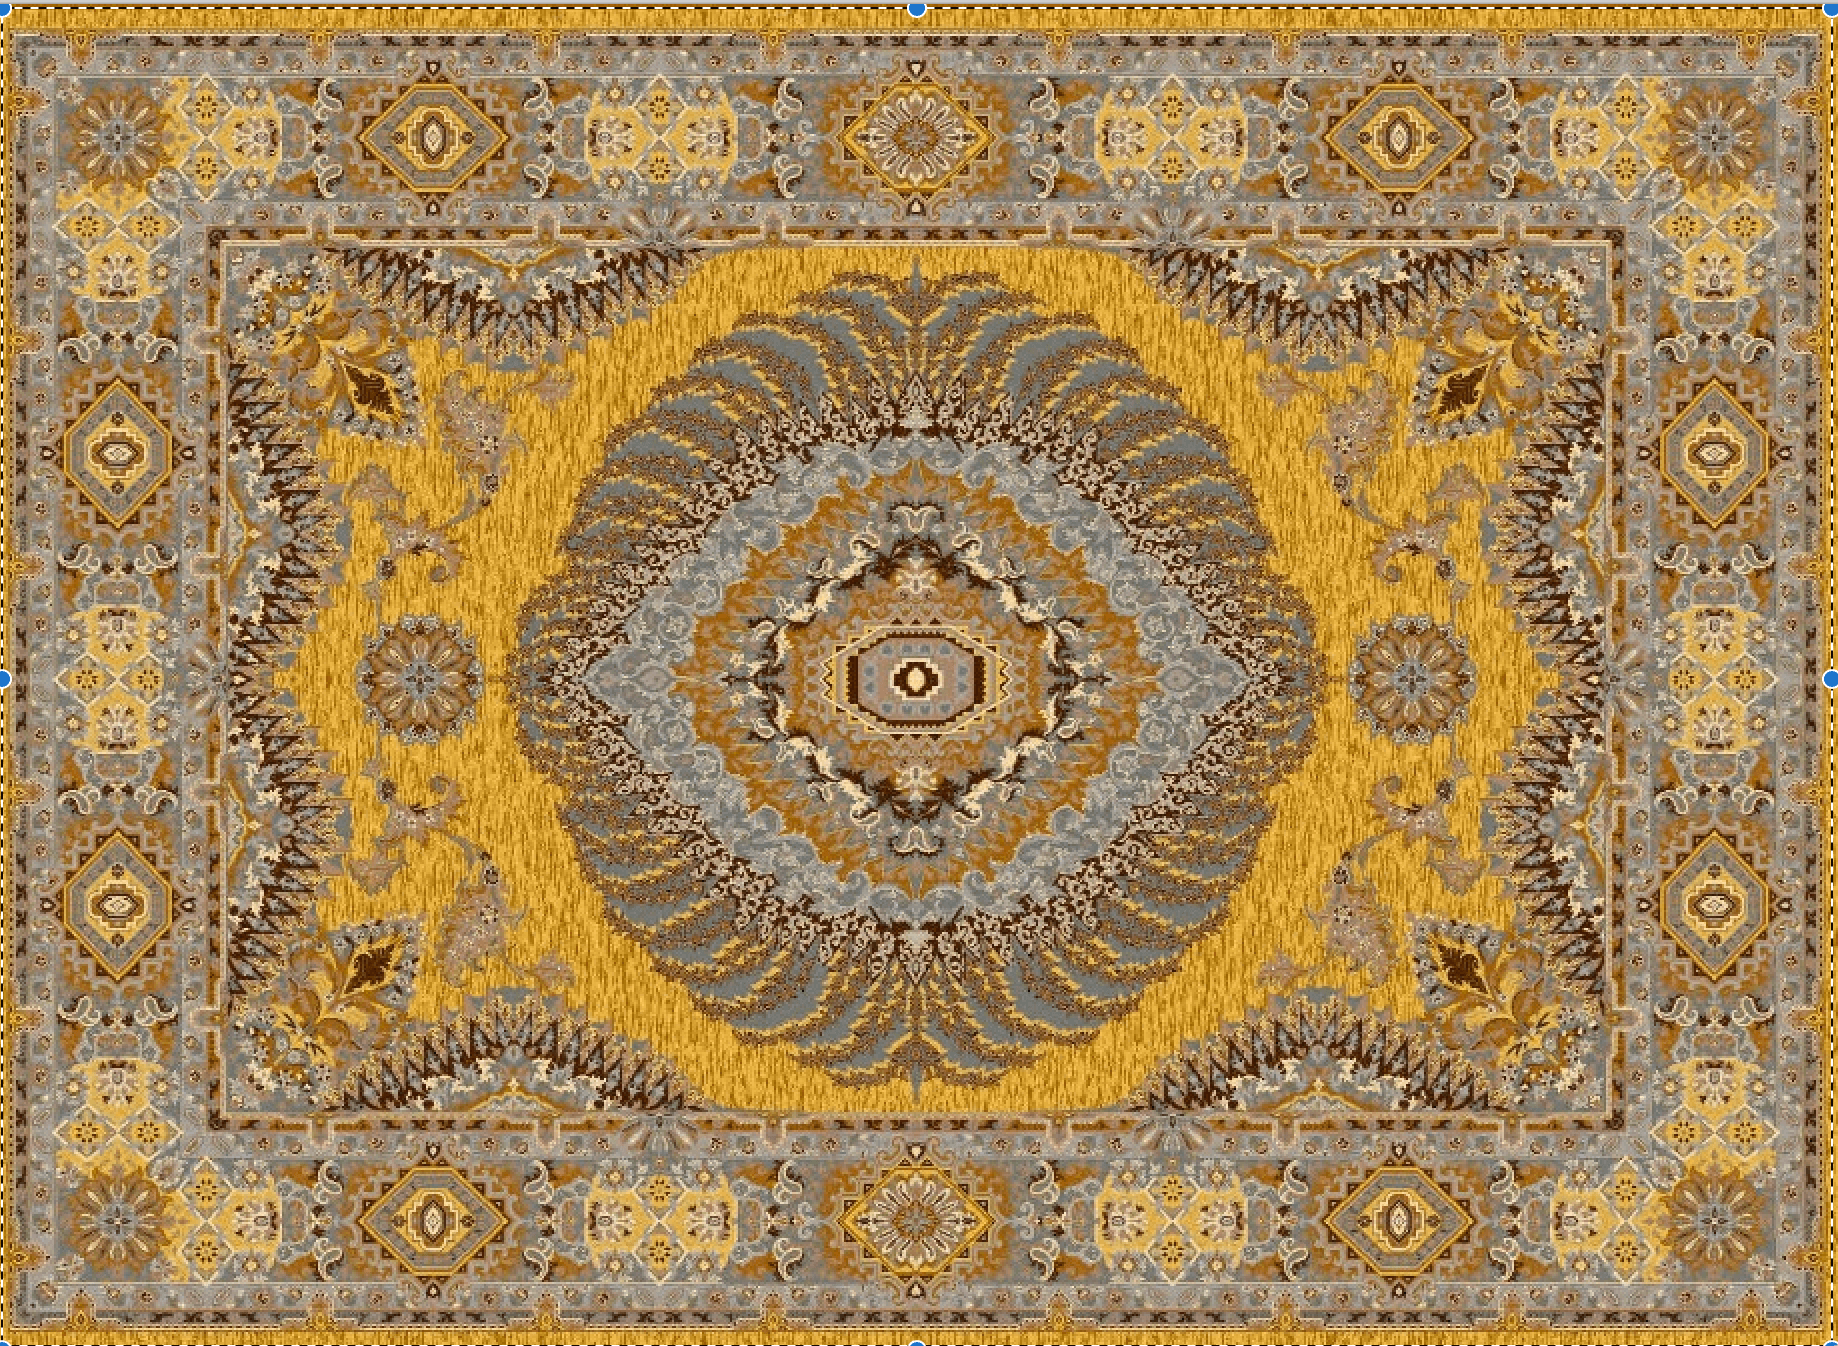 Hochwertiger persischer Designerteppich, handgeknüpft aus reiner Schurwolle und Seide, goldgrundig mit grpßem Mittelmedallion, mehrfarbig, Draufsicht